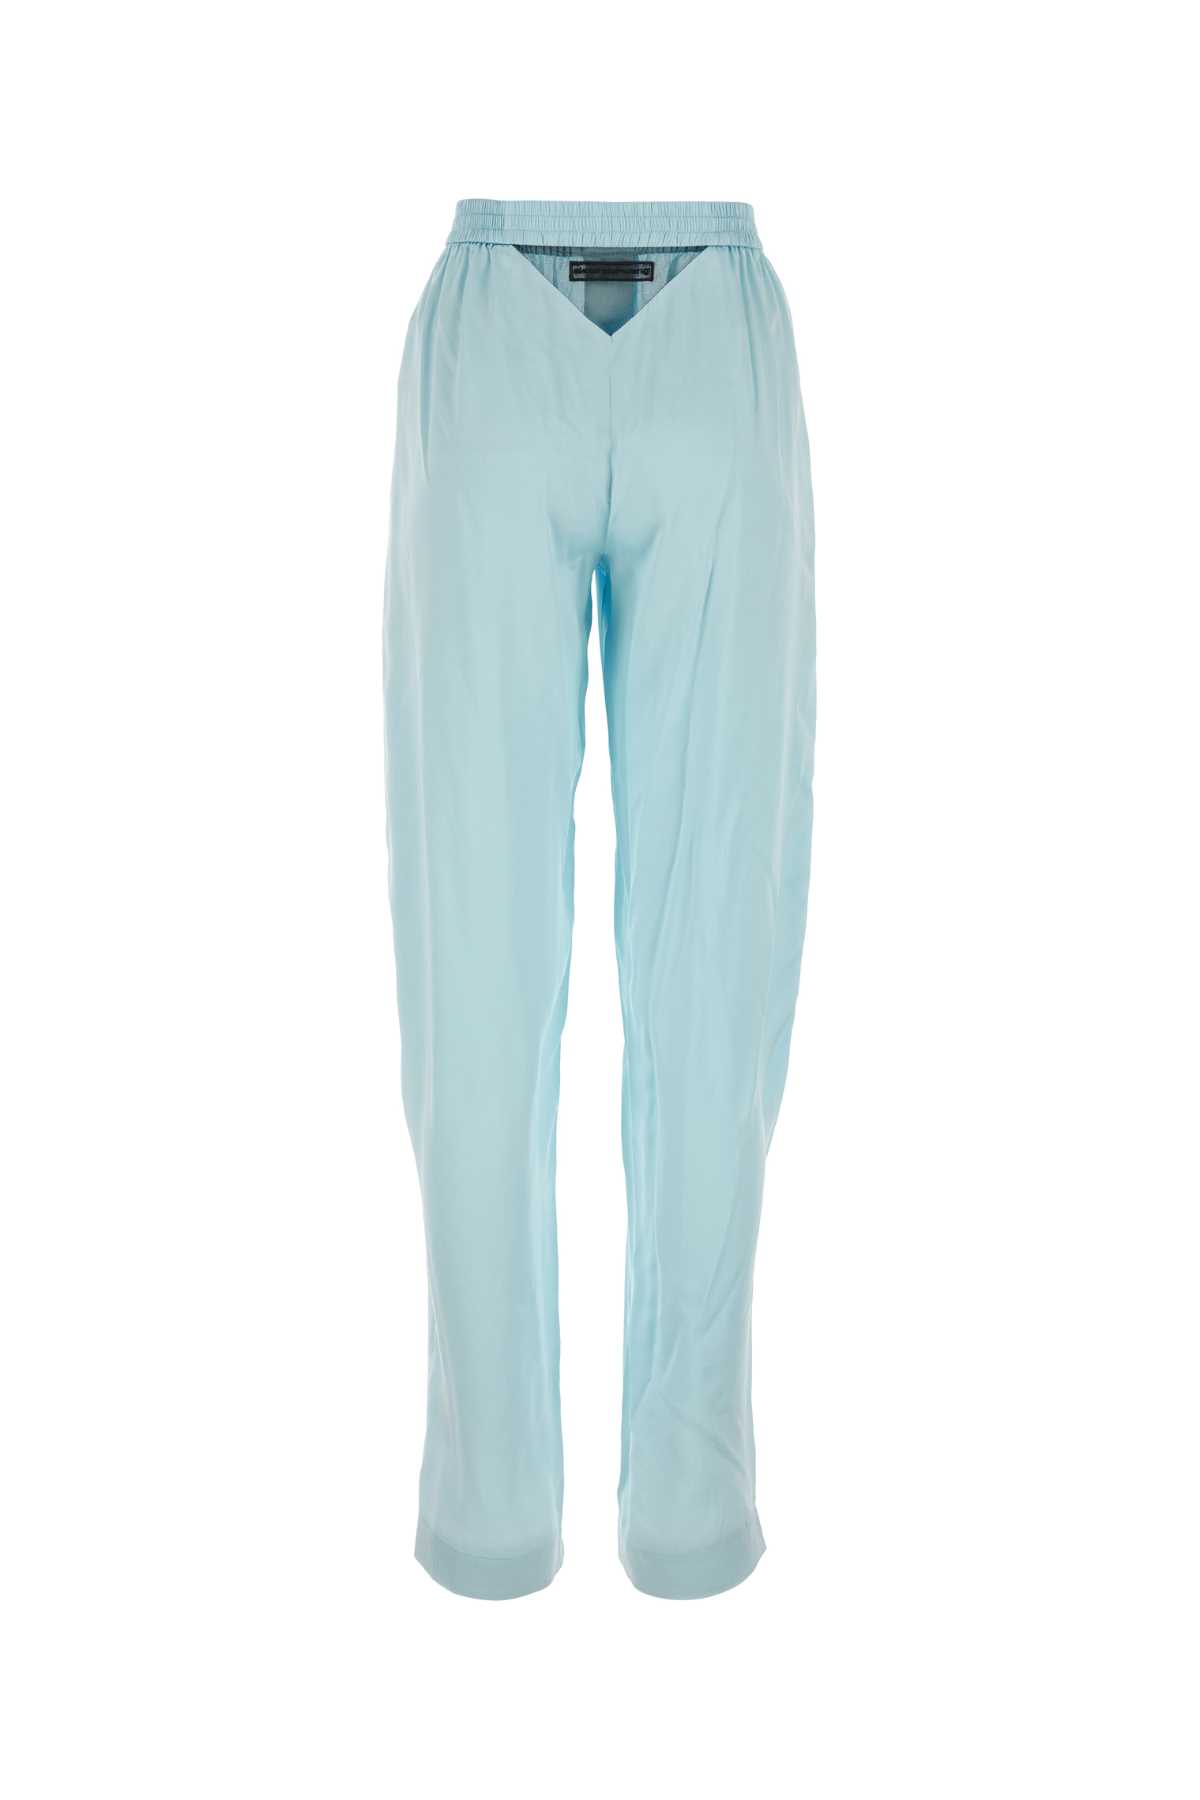 Alexander Wang Light Blue Satin Pyjama Pant In Shineblue